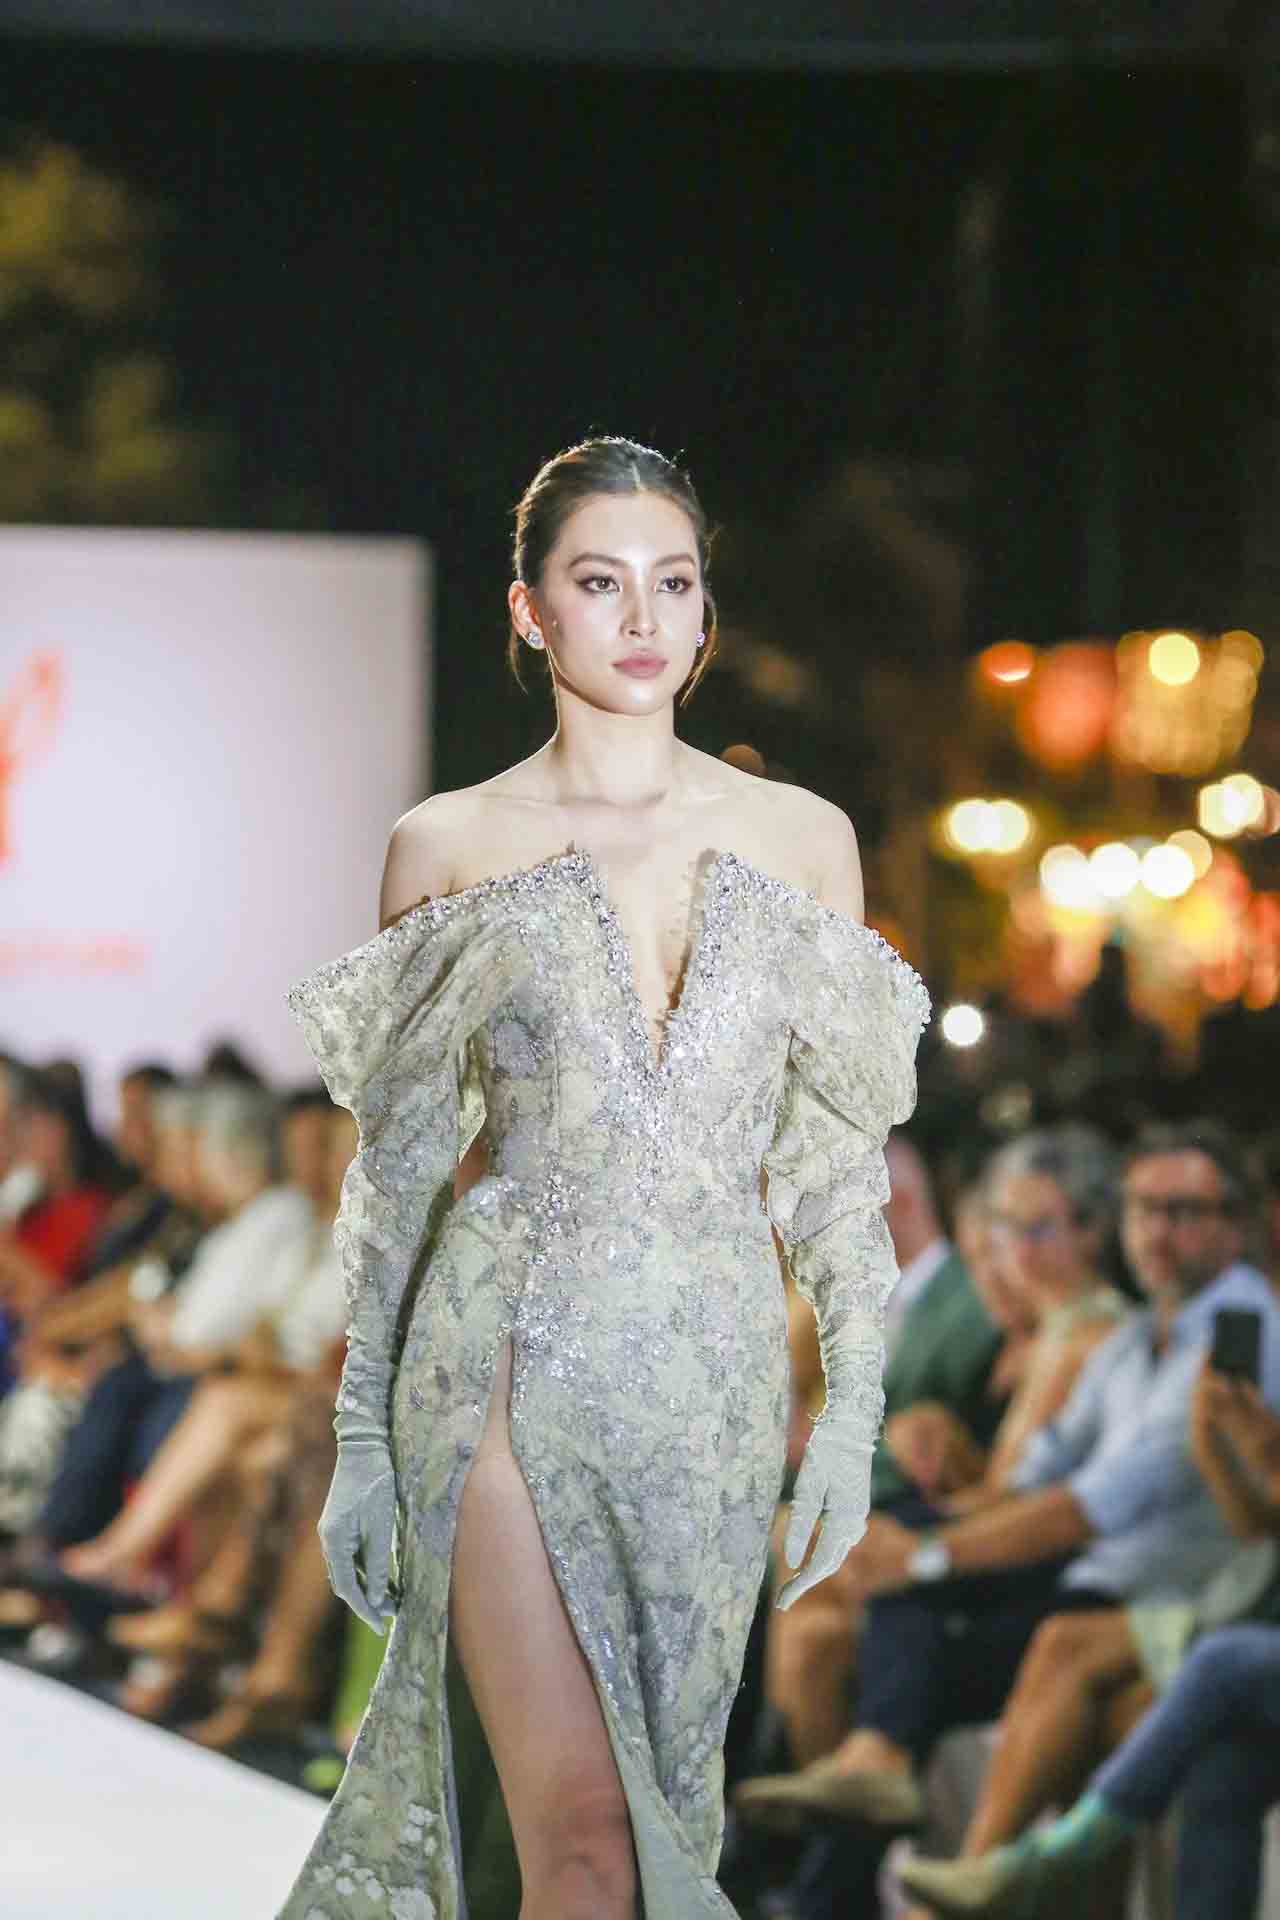 Hoa hậu Tiểu Vy làm vedette tại quê nhà Hội An  - ảnh 1